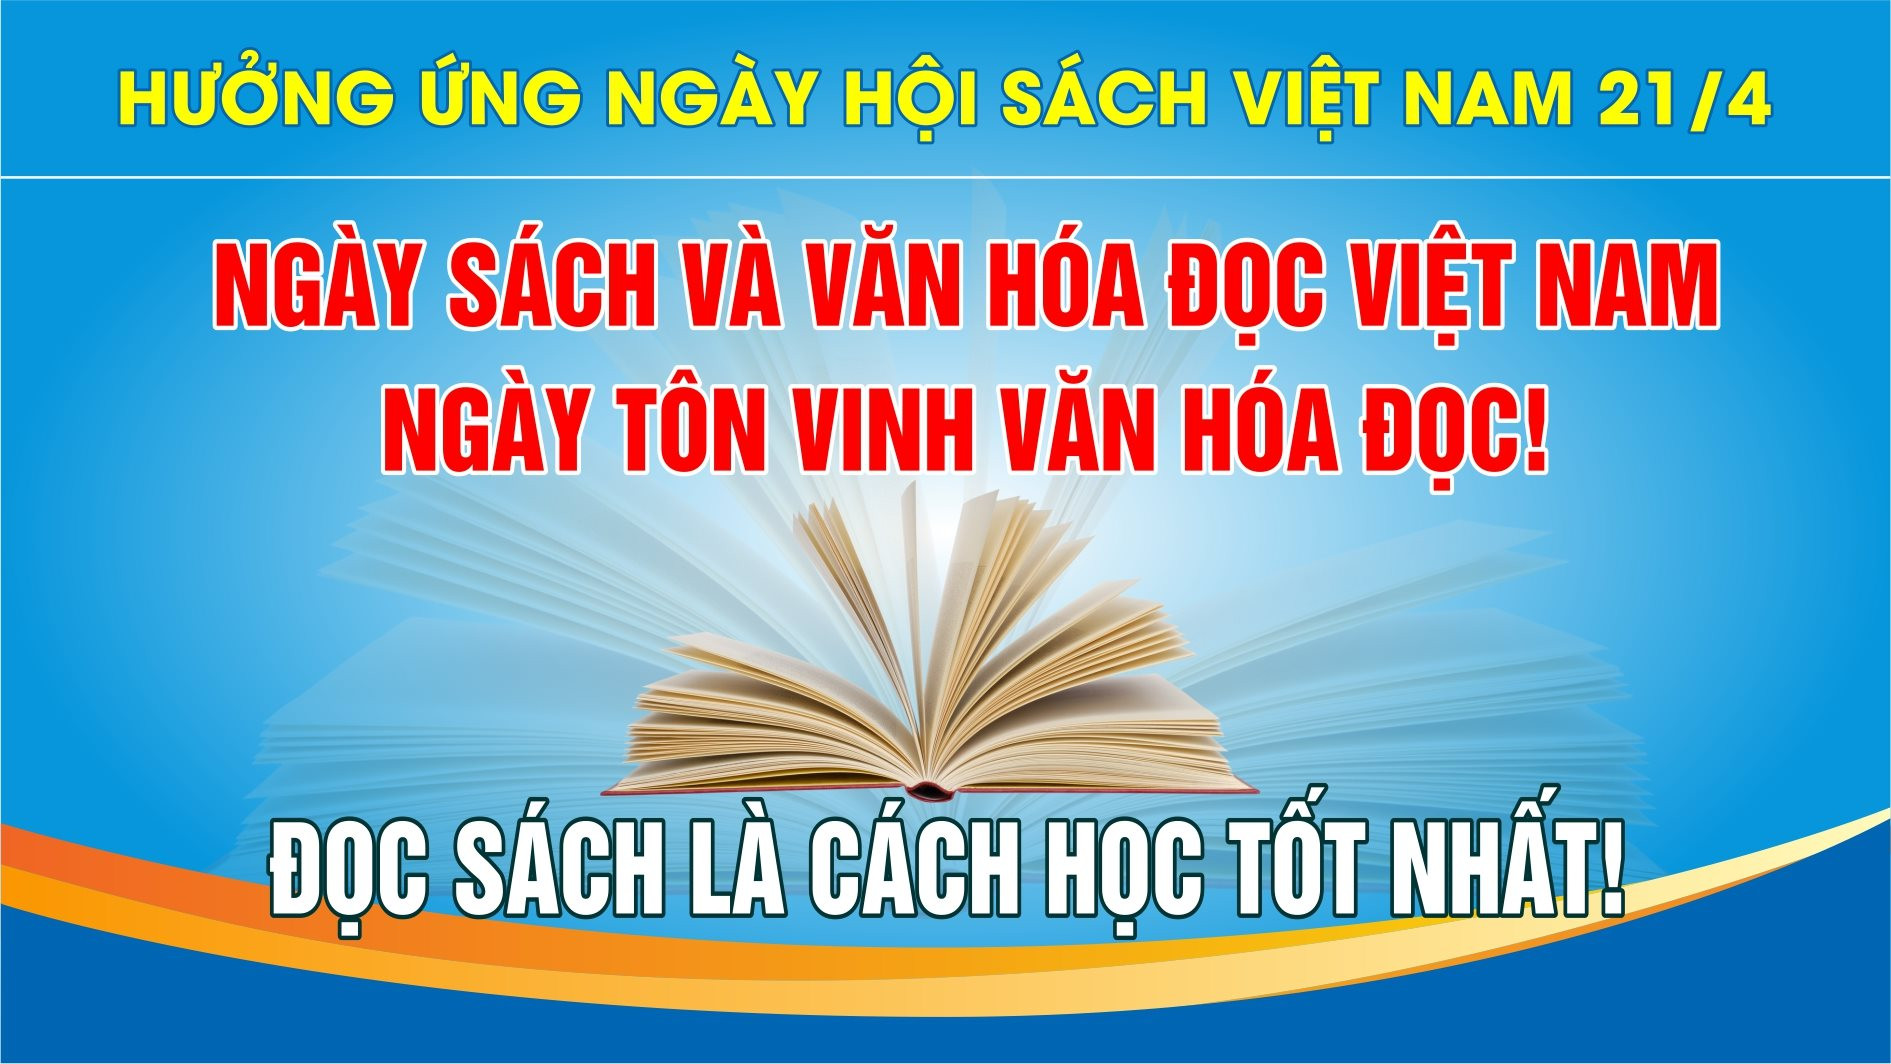 Chuỗi các hoạt động của Ngày Sách và Văn hóa đọc Việt Nam năm 2024 trên địa bàn tỉnh Gia Lai